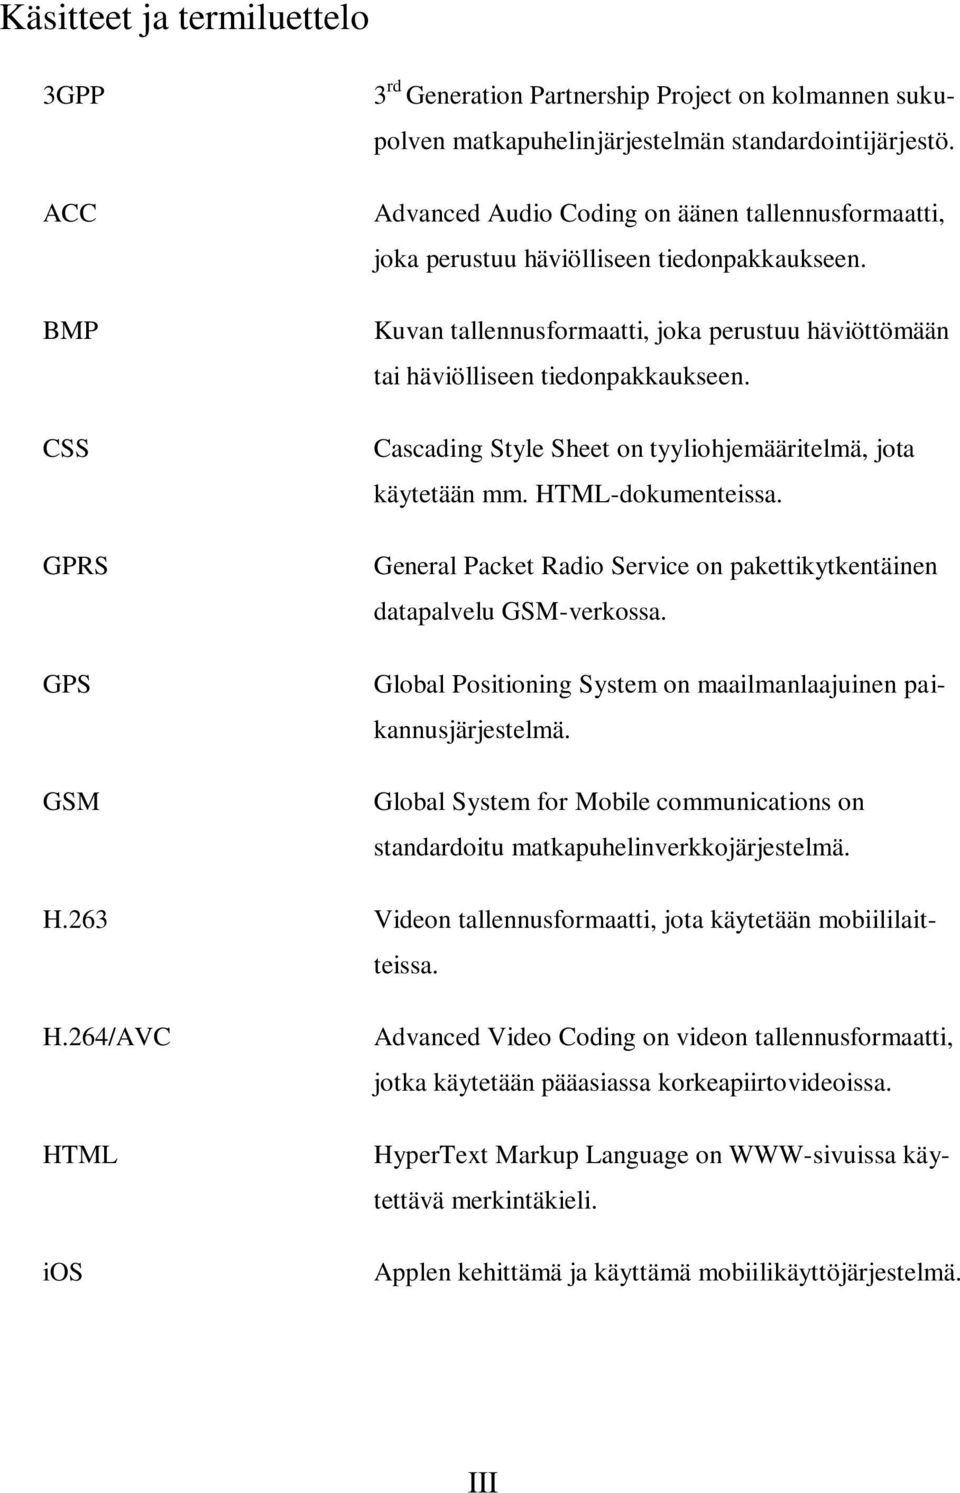 Cascading Style Sheet on tyyliohjemääritelmä, jota käytetään mm. HTML-dokumenteissa. General Packet Radio Service on pakettikytkentäinen datapalvelu GSM-verkossa.